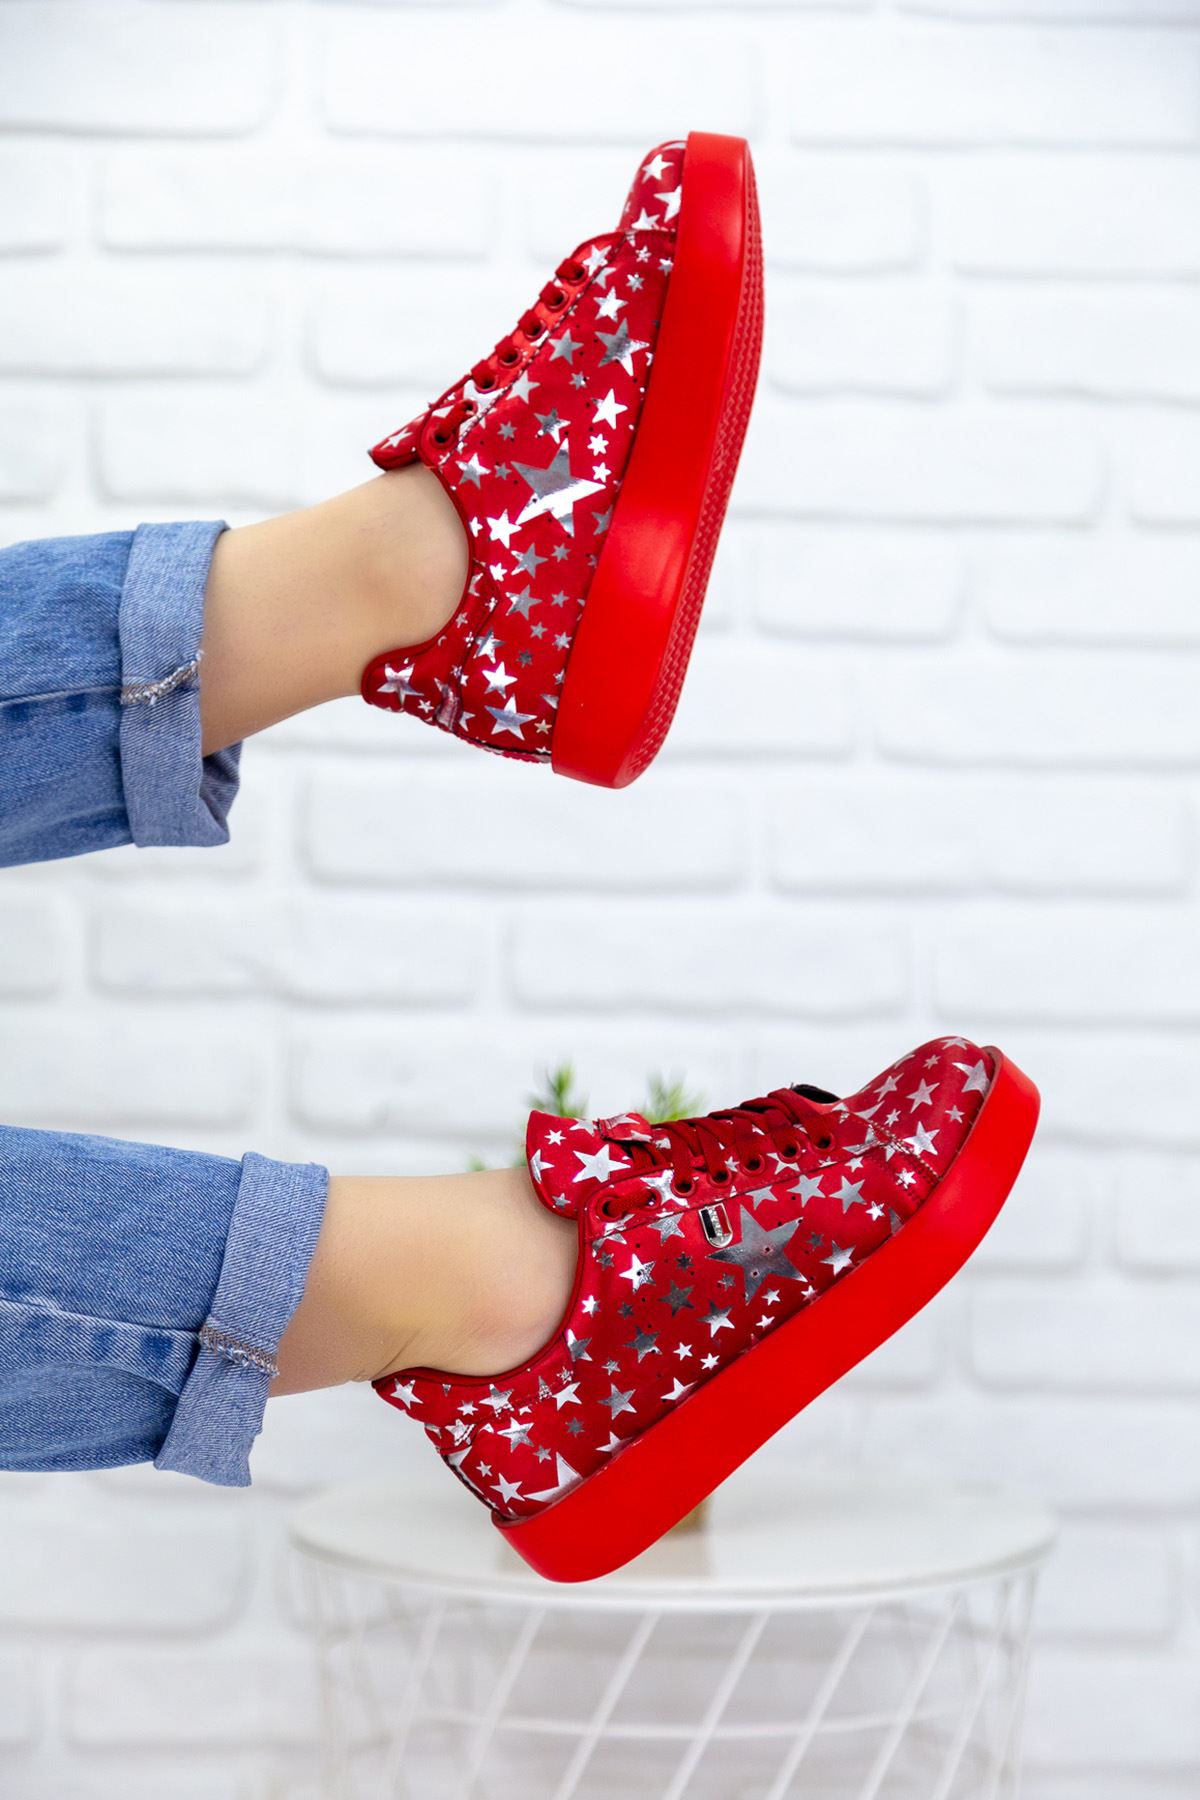 Luis Kırmızı Yıldız Desenli Ortapedik Bayan Spor Ayakkabı